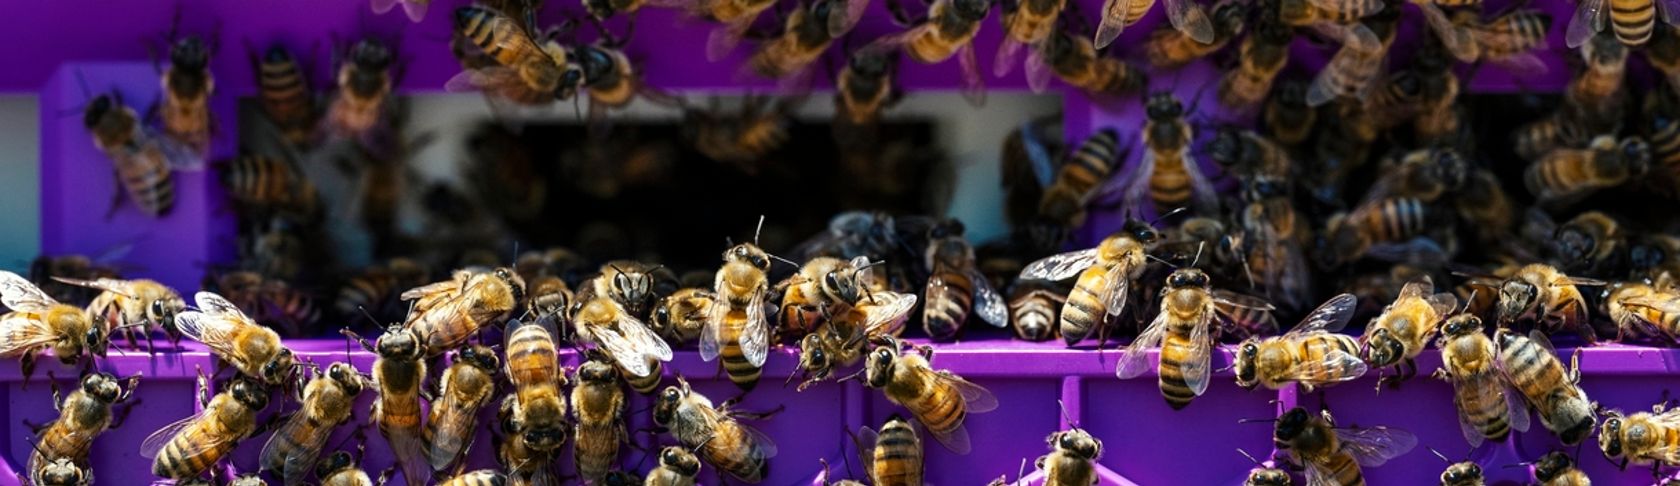 Fame zero e corretta nutrizione: l'importanza delle api